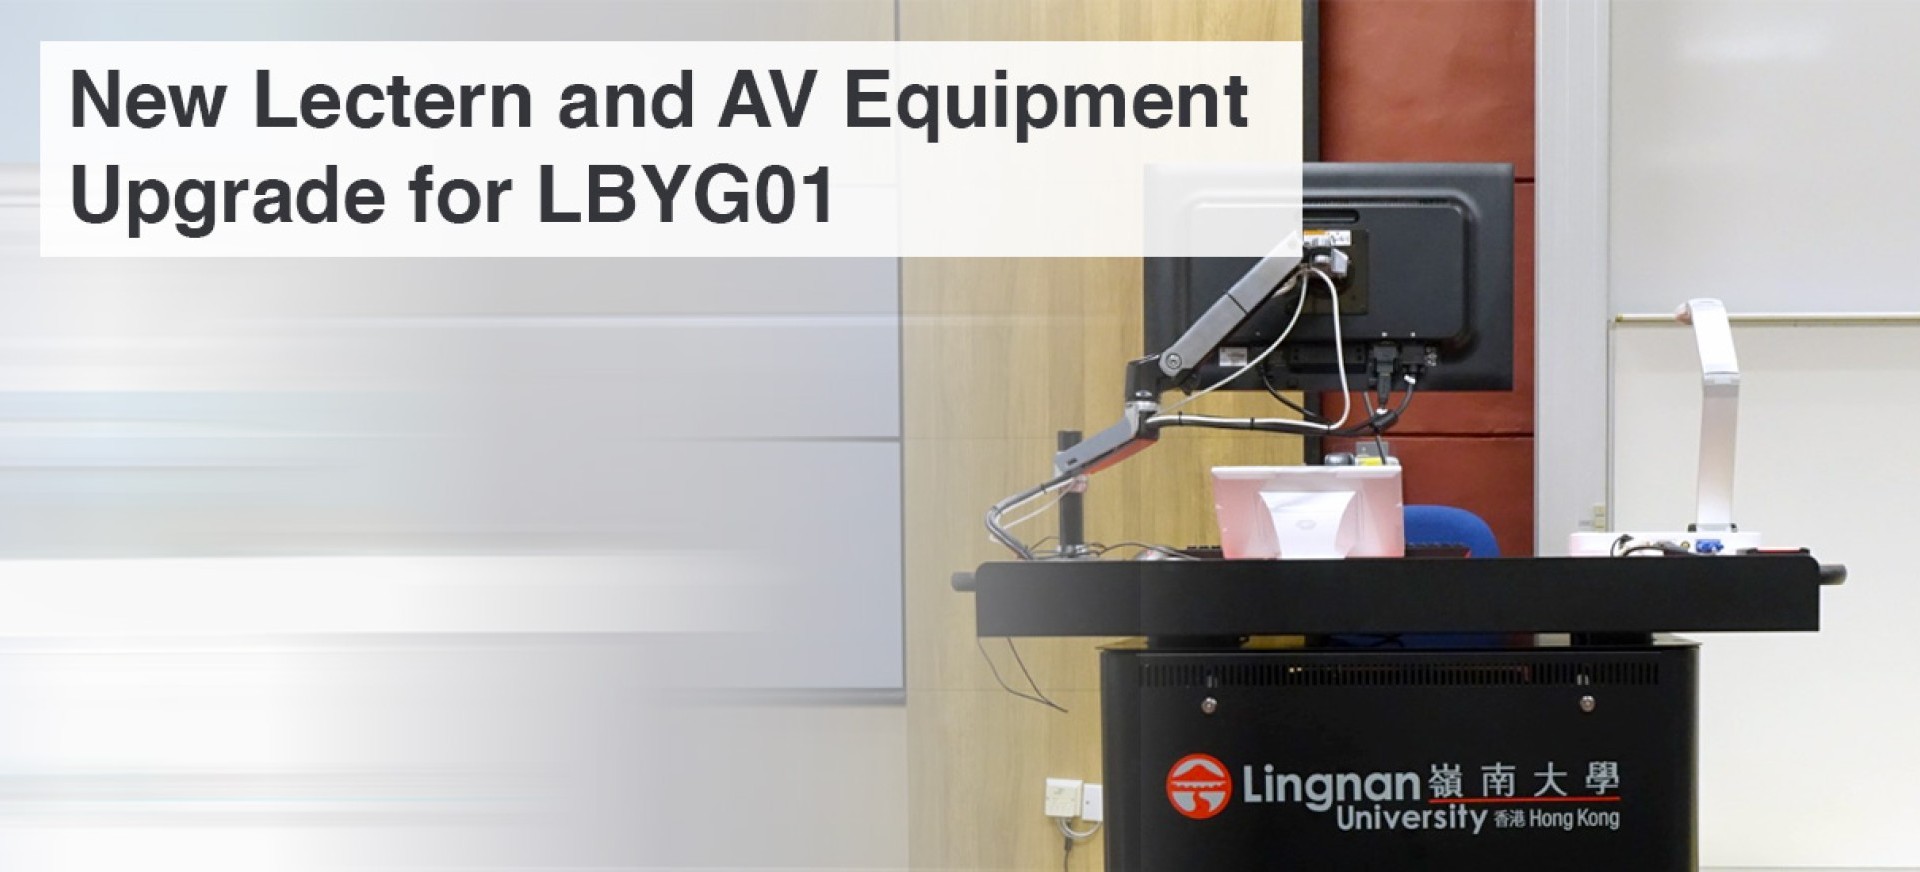 New Lectern and AV Equipment Upgrade for LBYG01